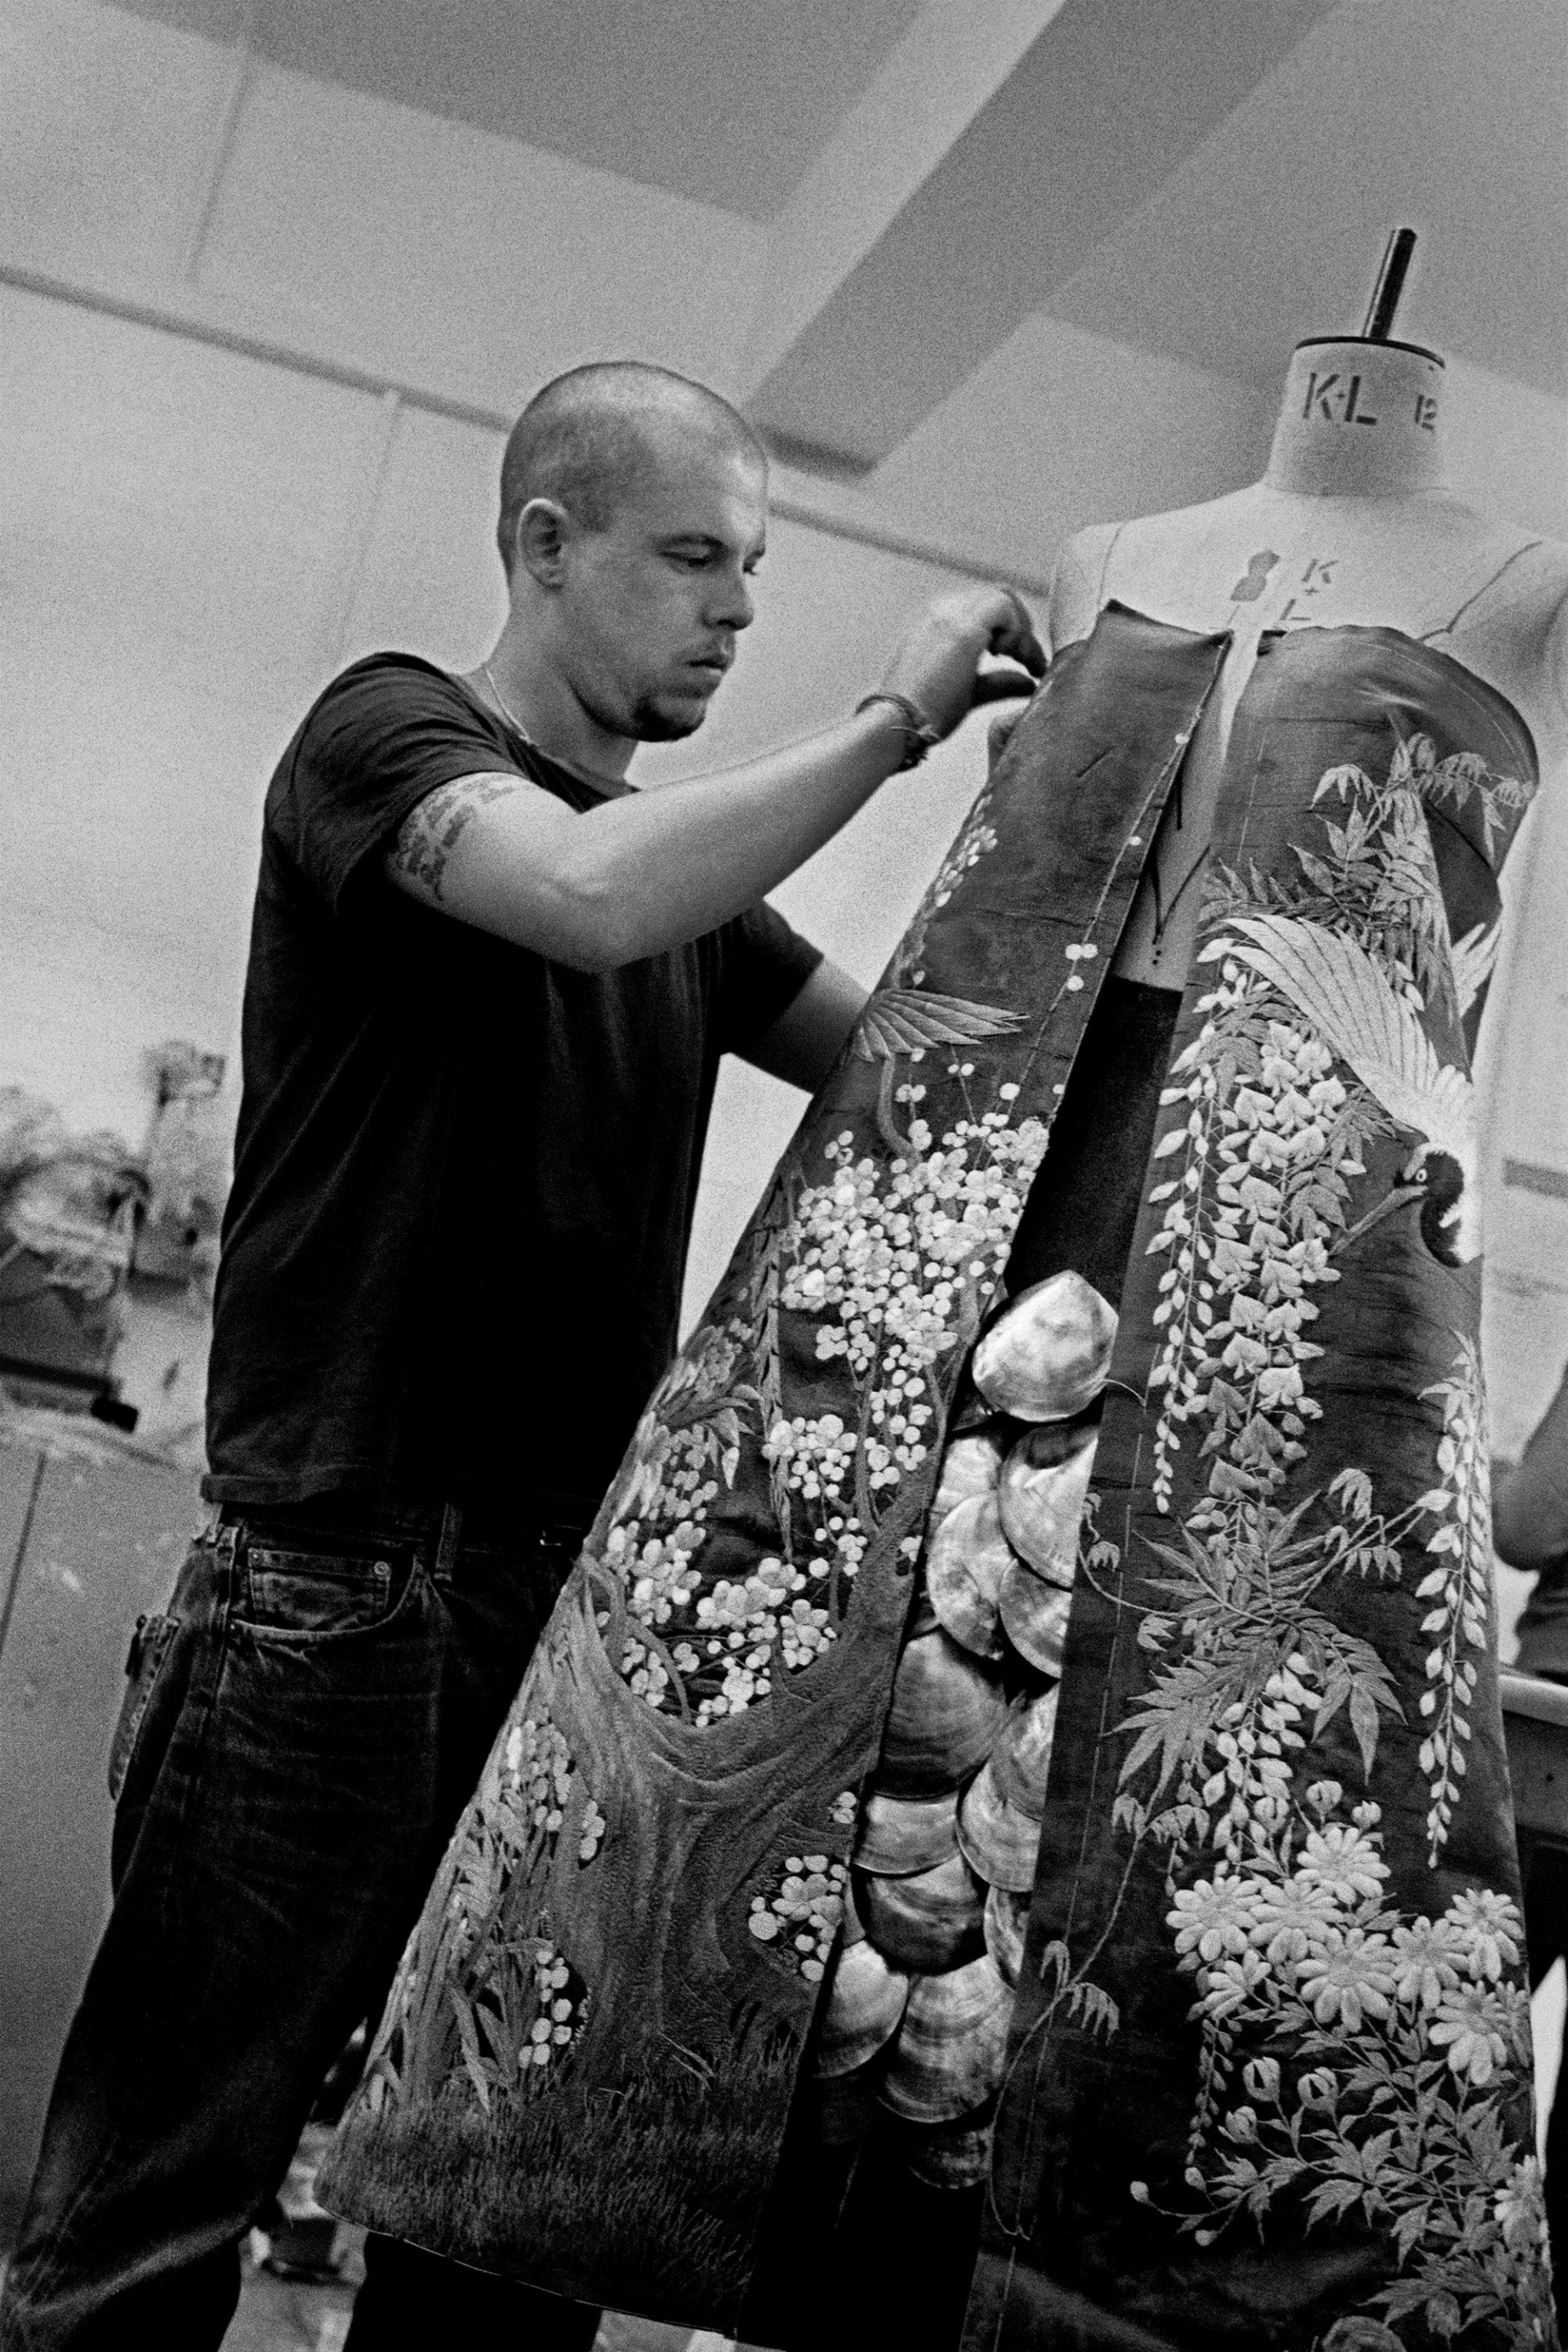 Thiết kế của Alexander McQueen thể được xem như tác phẩm nghệ thuật nhiều hơn là quần áo ready-to-wear, sự kết hợp hài hoà giữa mạnh mẽ và nữ tính cho nữ giới. Ông từng nhận được huân chương của Đế chế Anh và danh hiệu 'Nhà thiết kế quốc tế của năm'.